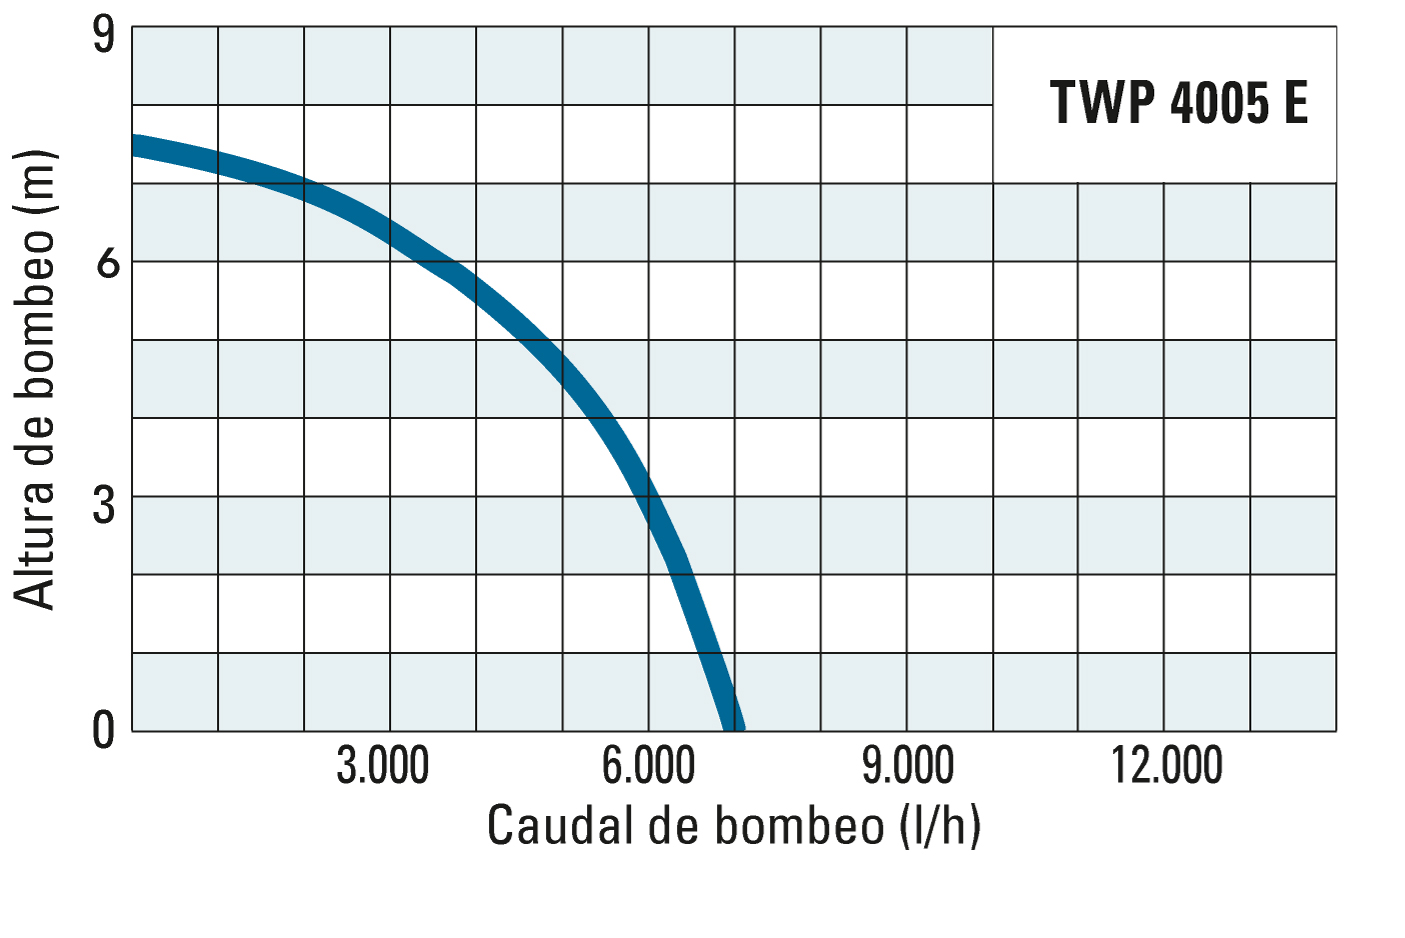 Altura de bombeo y caudal de bombeo de la TWP 4005 E